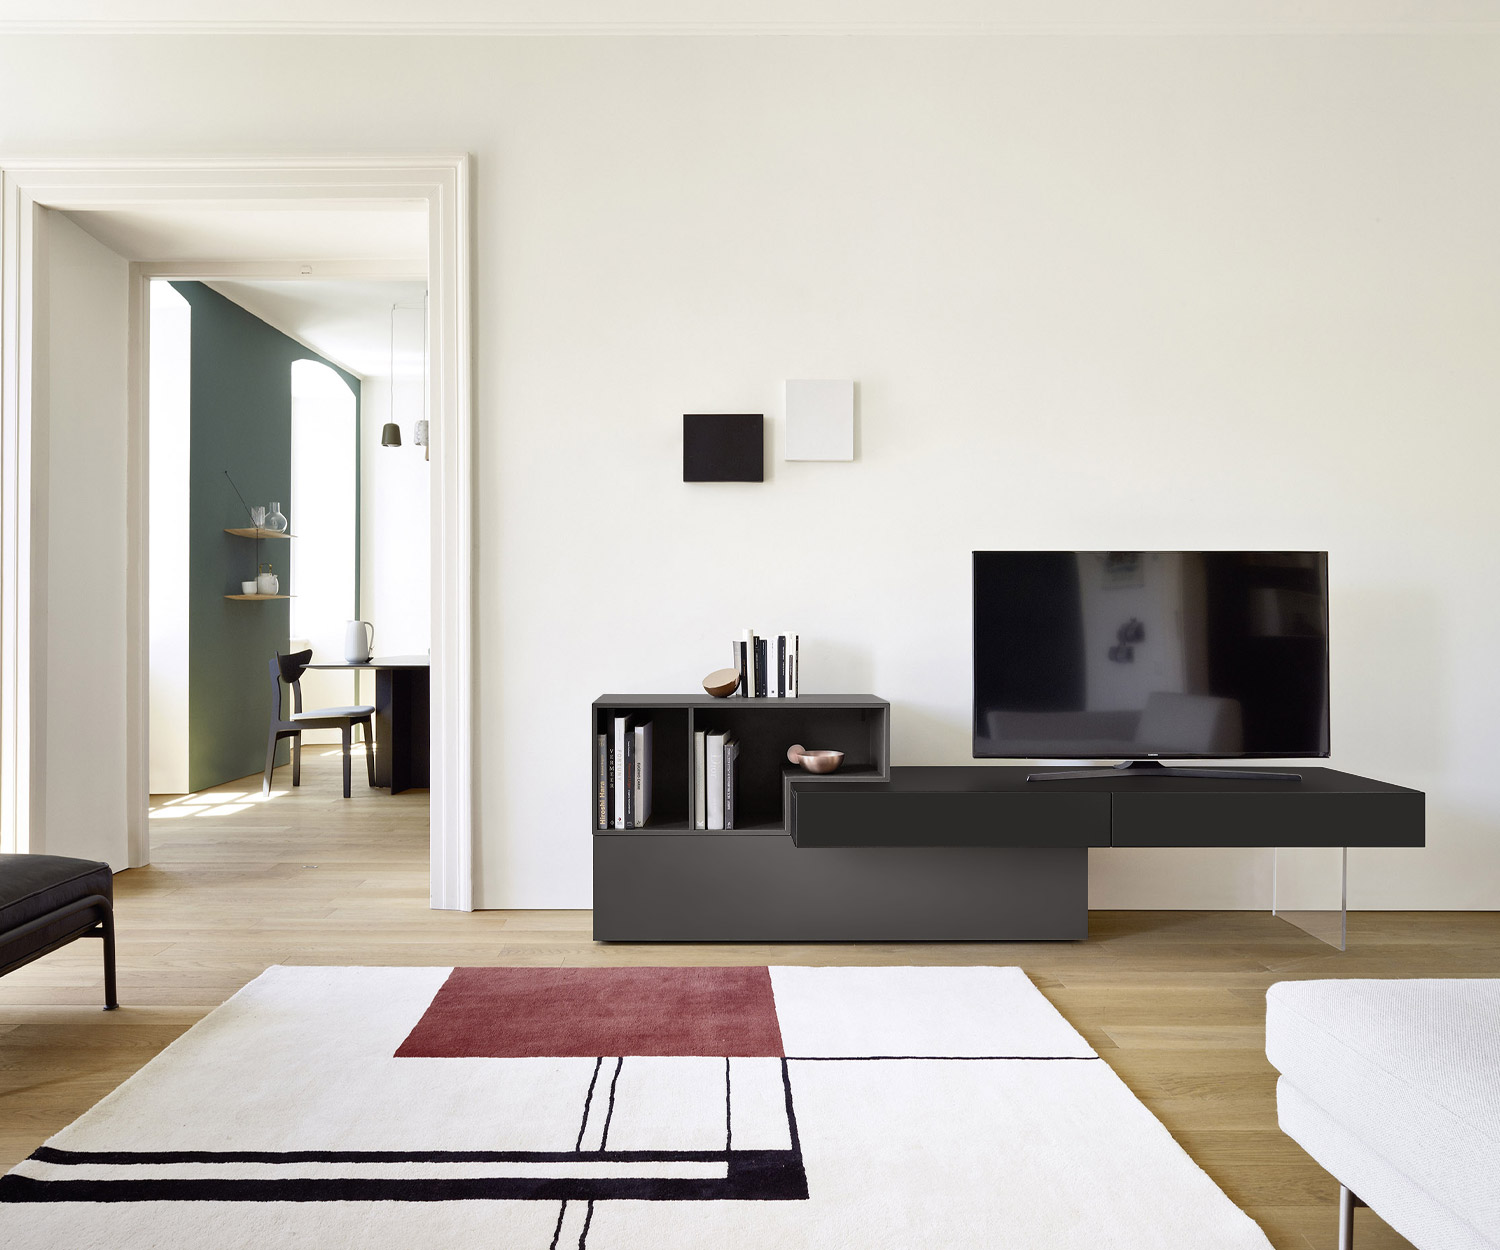 Exclusief design TV wandmeubel van Livitalia Zwevend effect dankzij donker eiken acryl voet